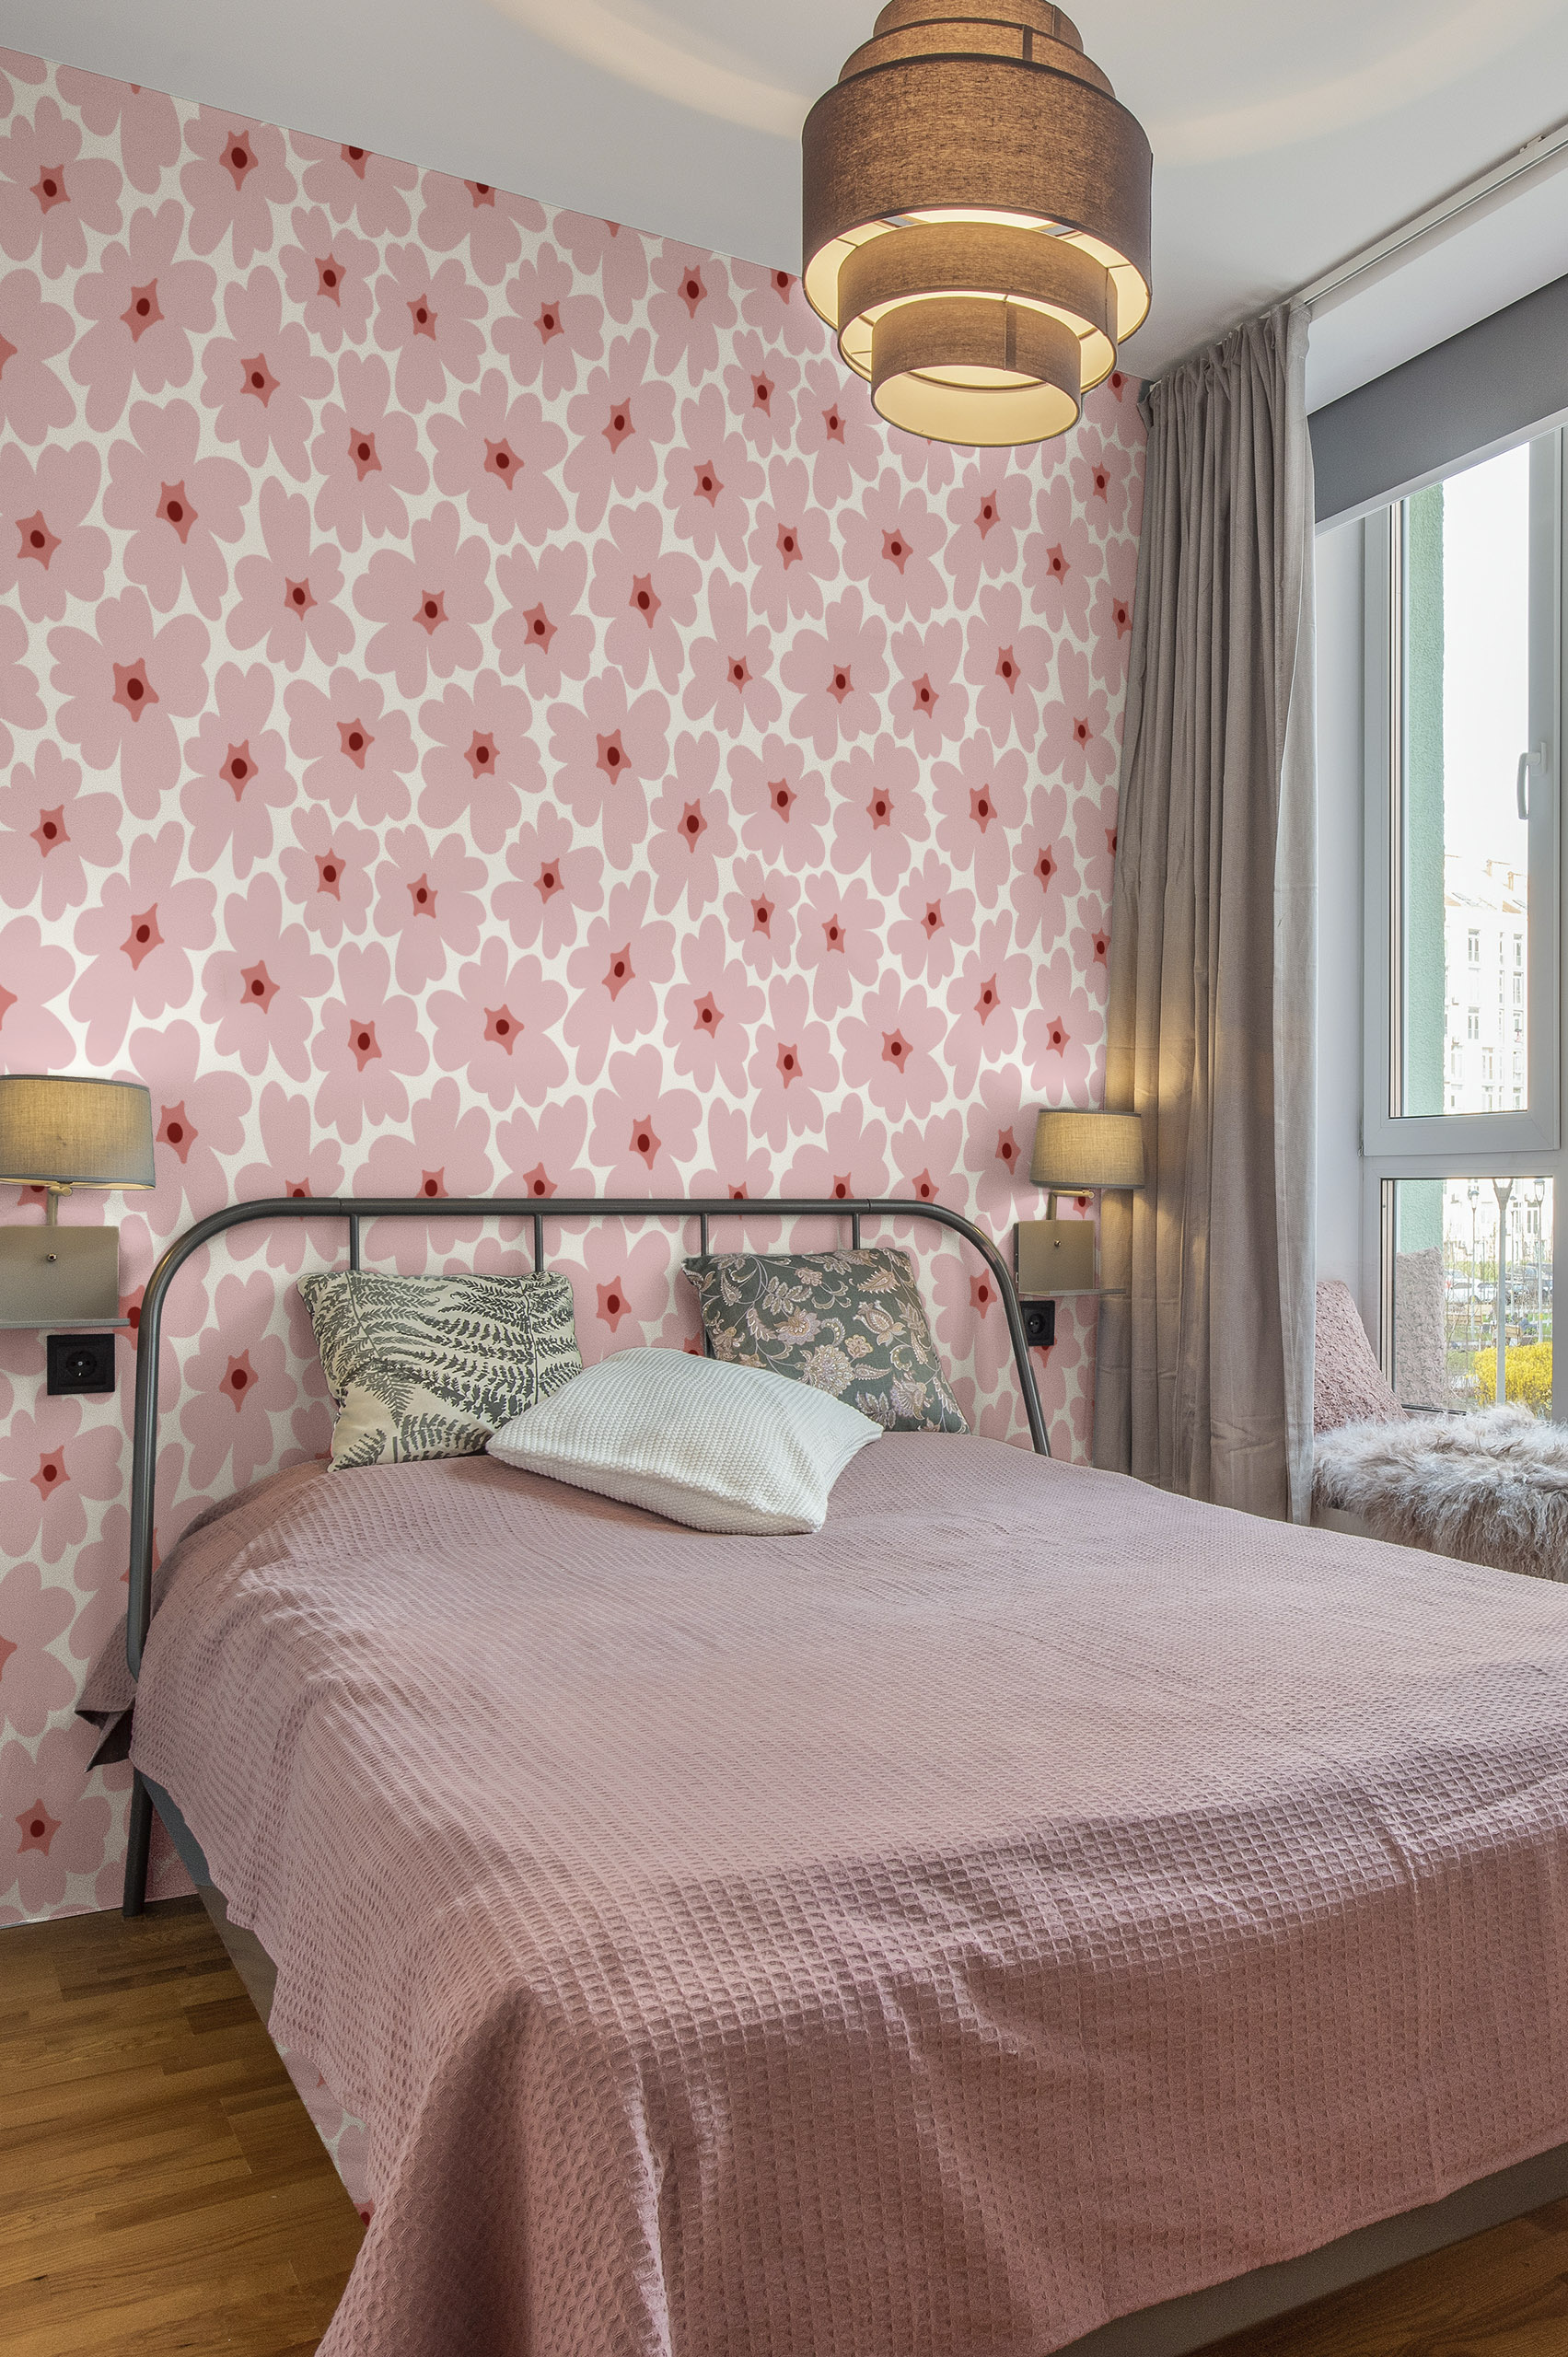 N302 papier peint fleurs vintage colorees rose fond blanc chambre